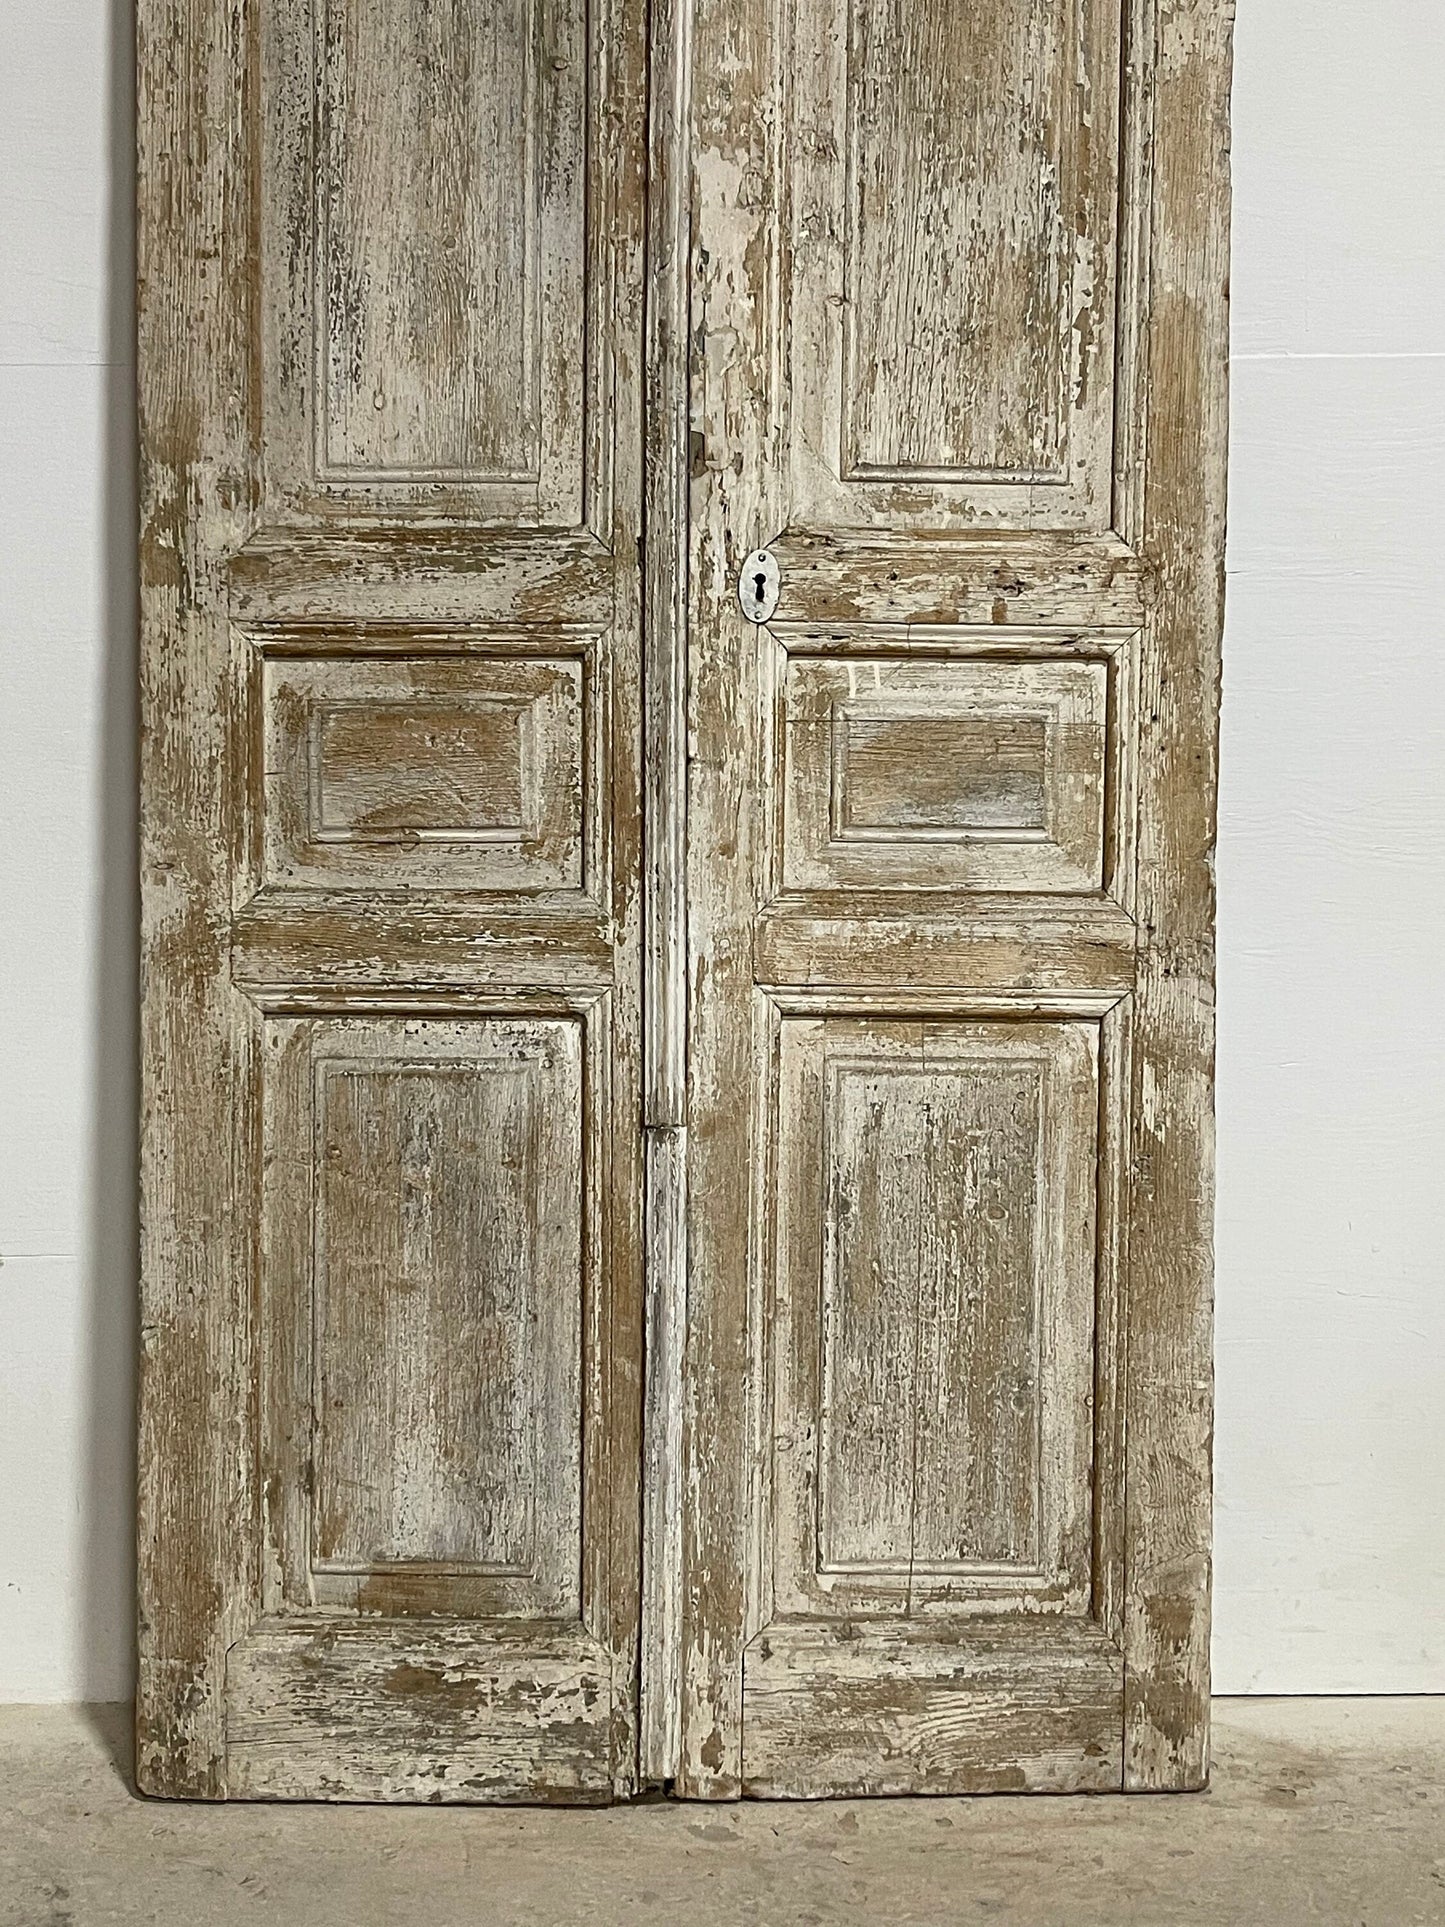 Antique French panel doors (81.25x36) I086s